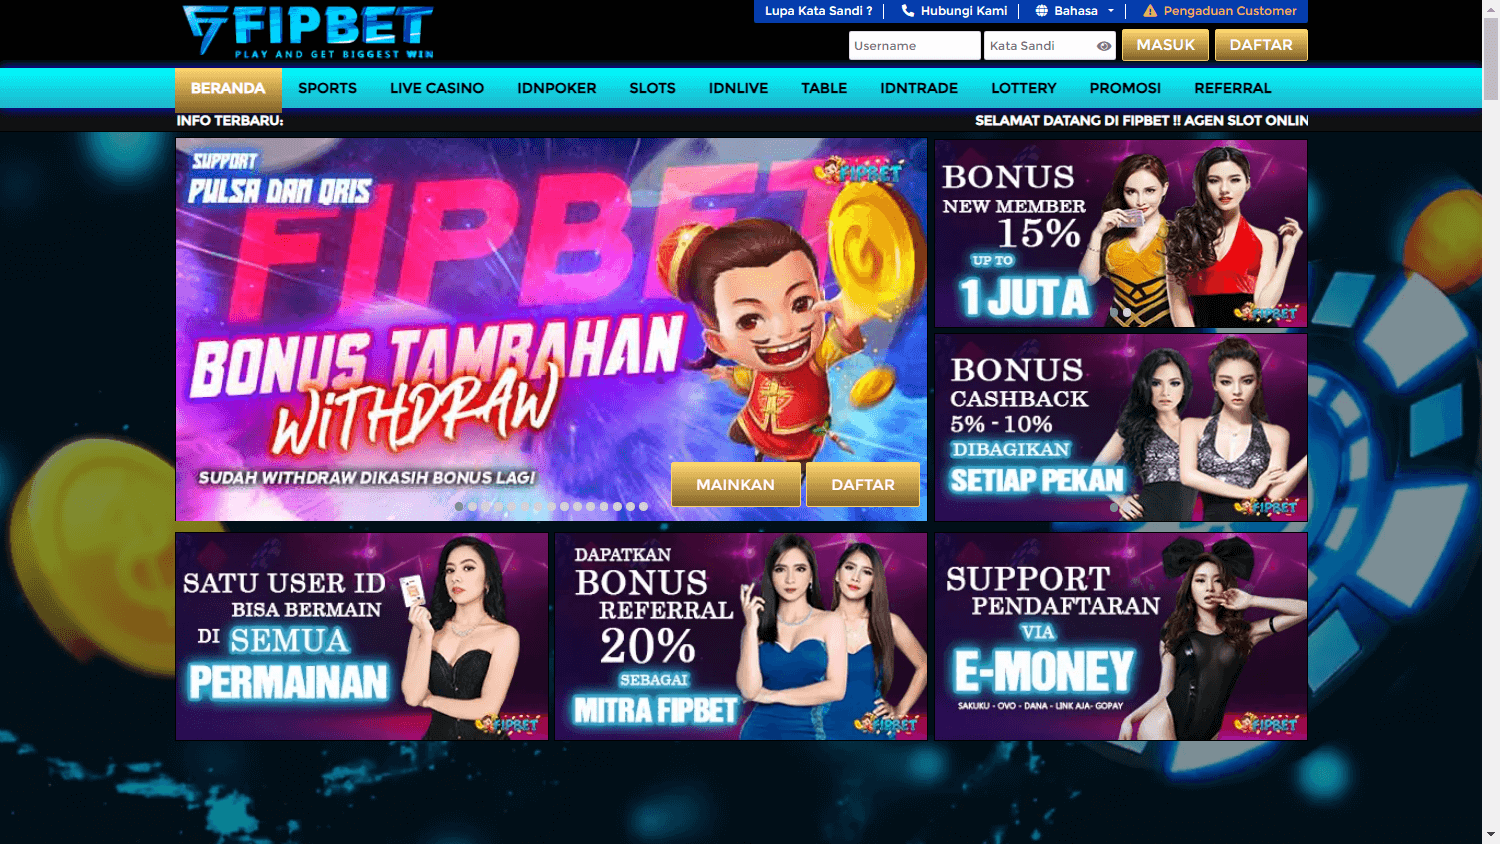 fipbet_casino_homepage_desktop